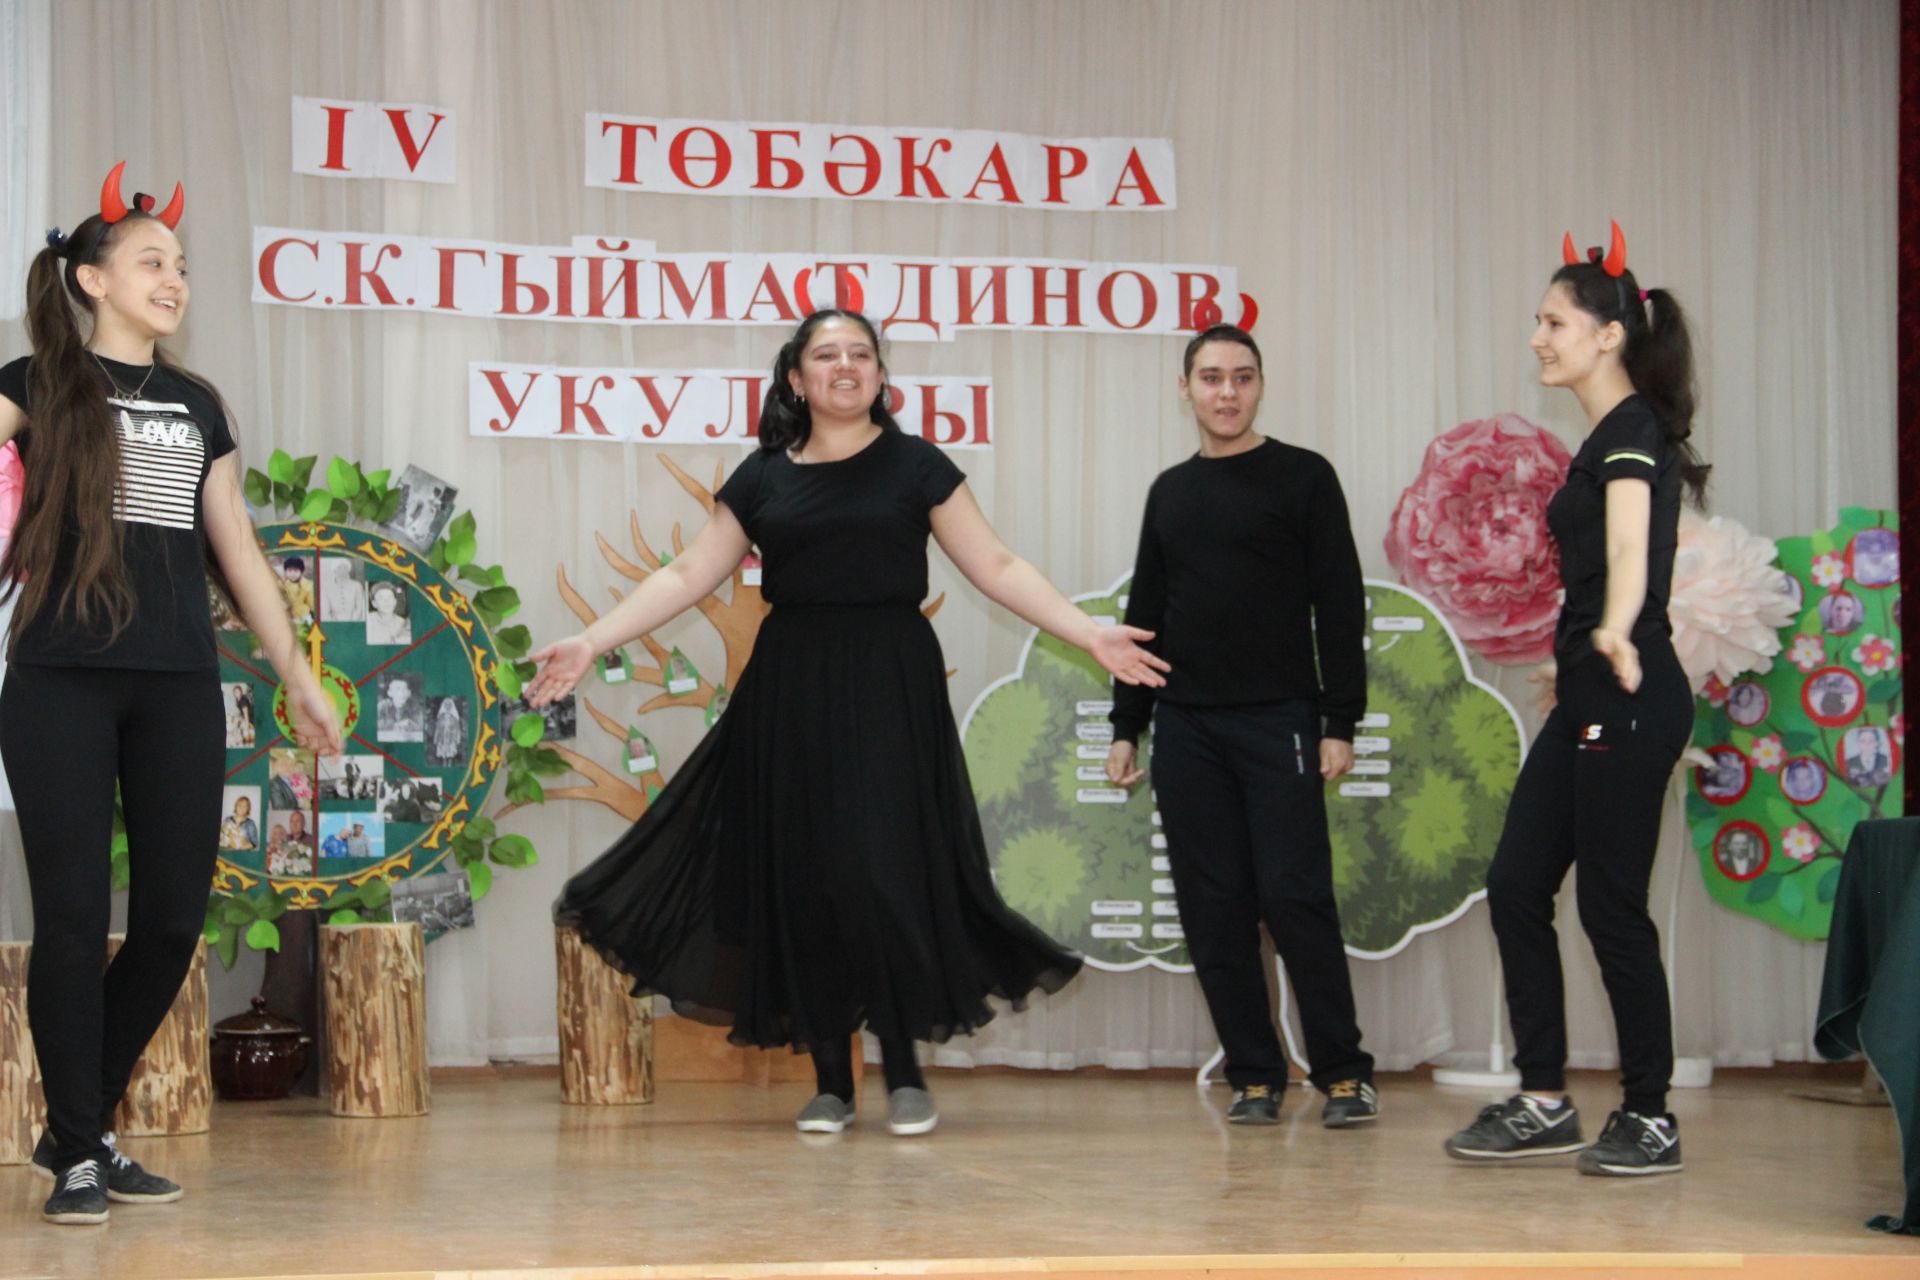 Осиново бистәсендәге гимназиядә бүген зур бәйрәм: IV төбәкара С.К.Гыйматдинов укулары